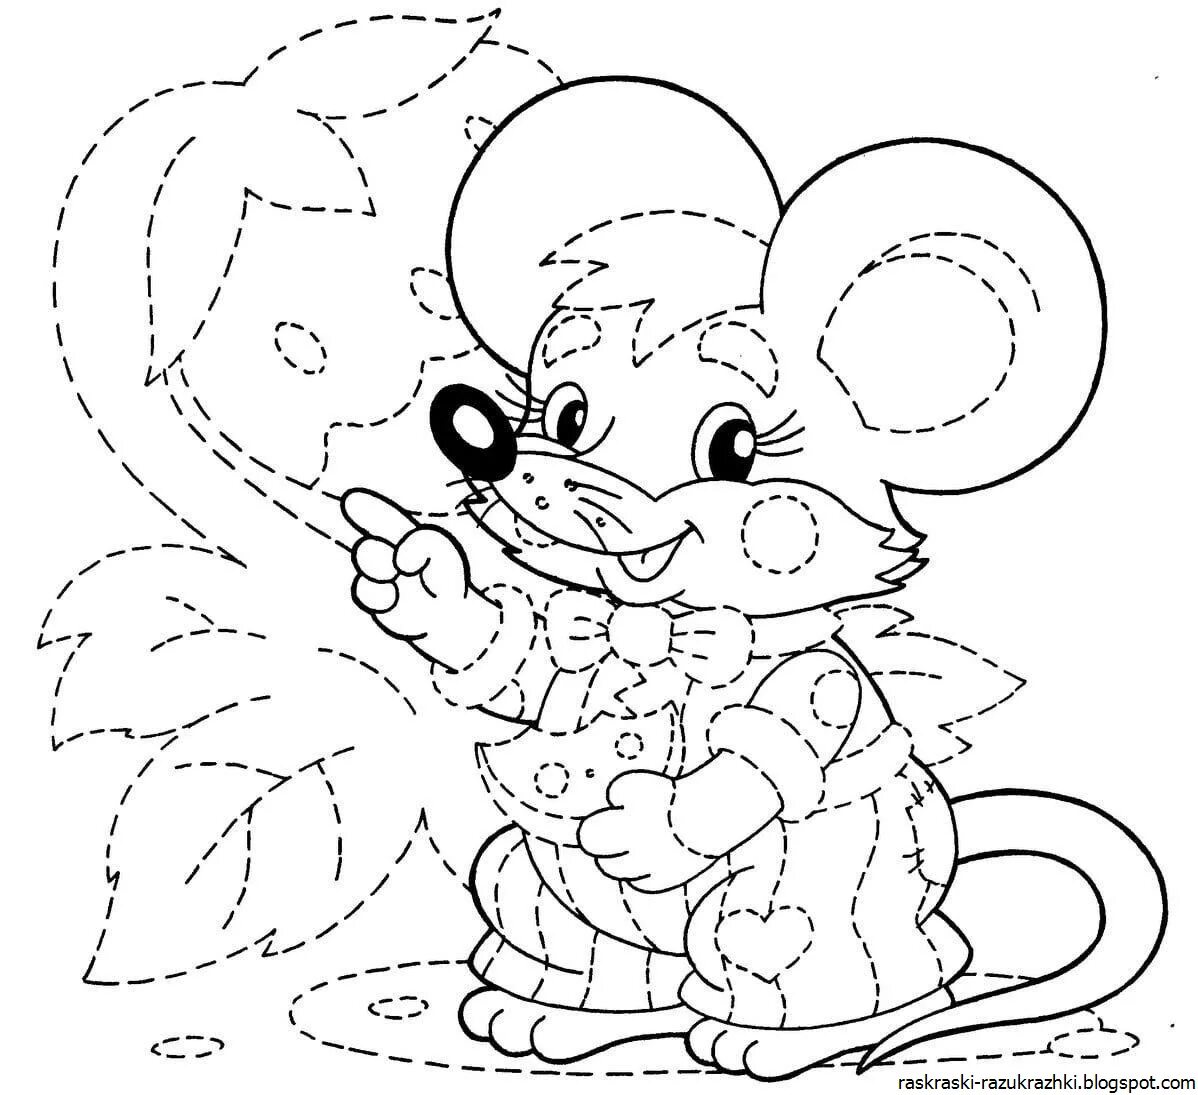 Разукрашки для детей 6 7 лет. Раскраска мышонок. Раскраски обводилки. Обведение рисунка по контуру. Обведи и раскрась для детей.